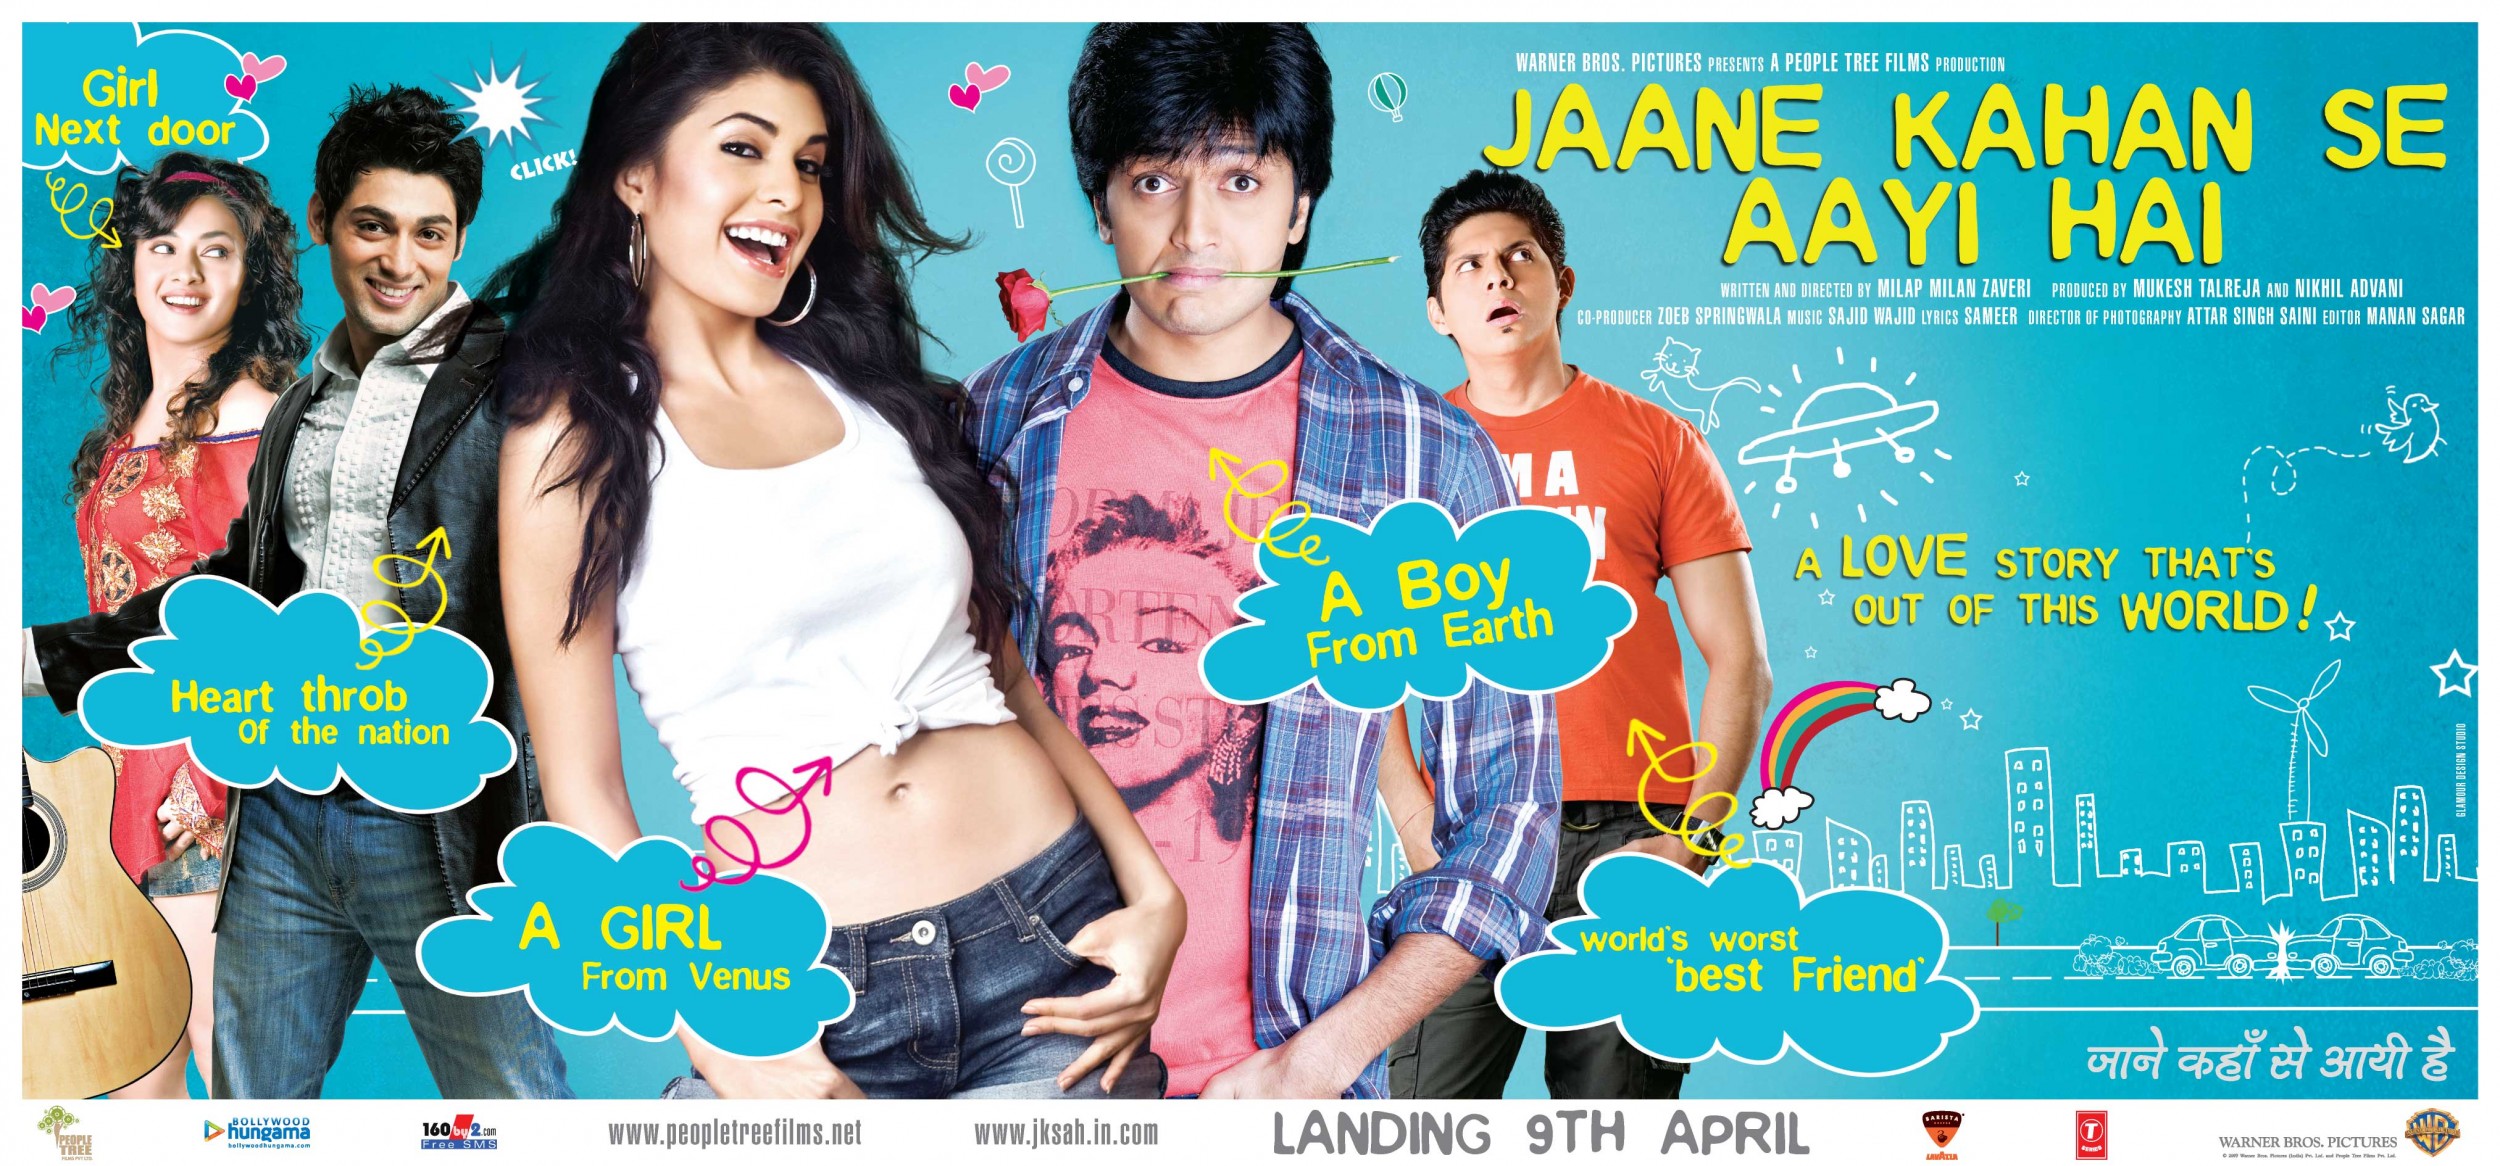 Mega Sized Movie Poster Image for Jaane Kahan Se Aayi Hai (#5 of 5)